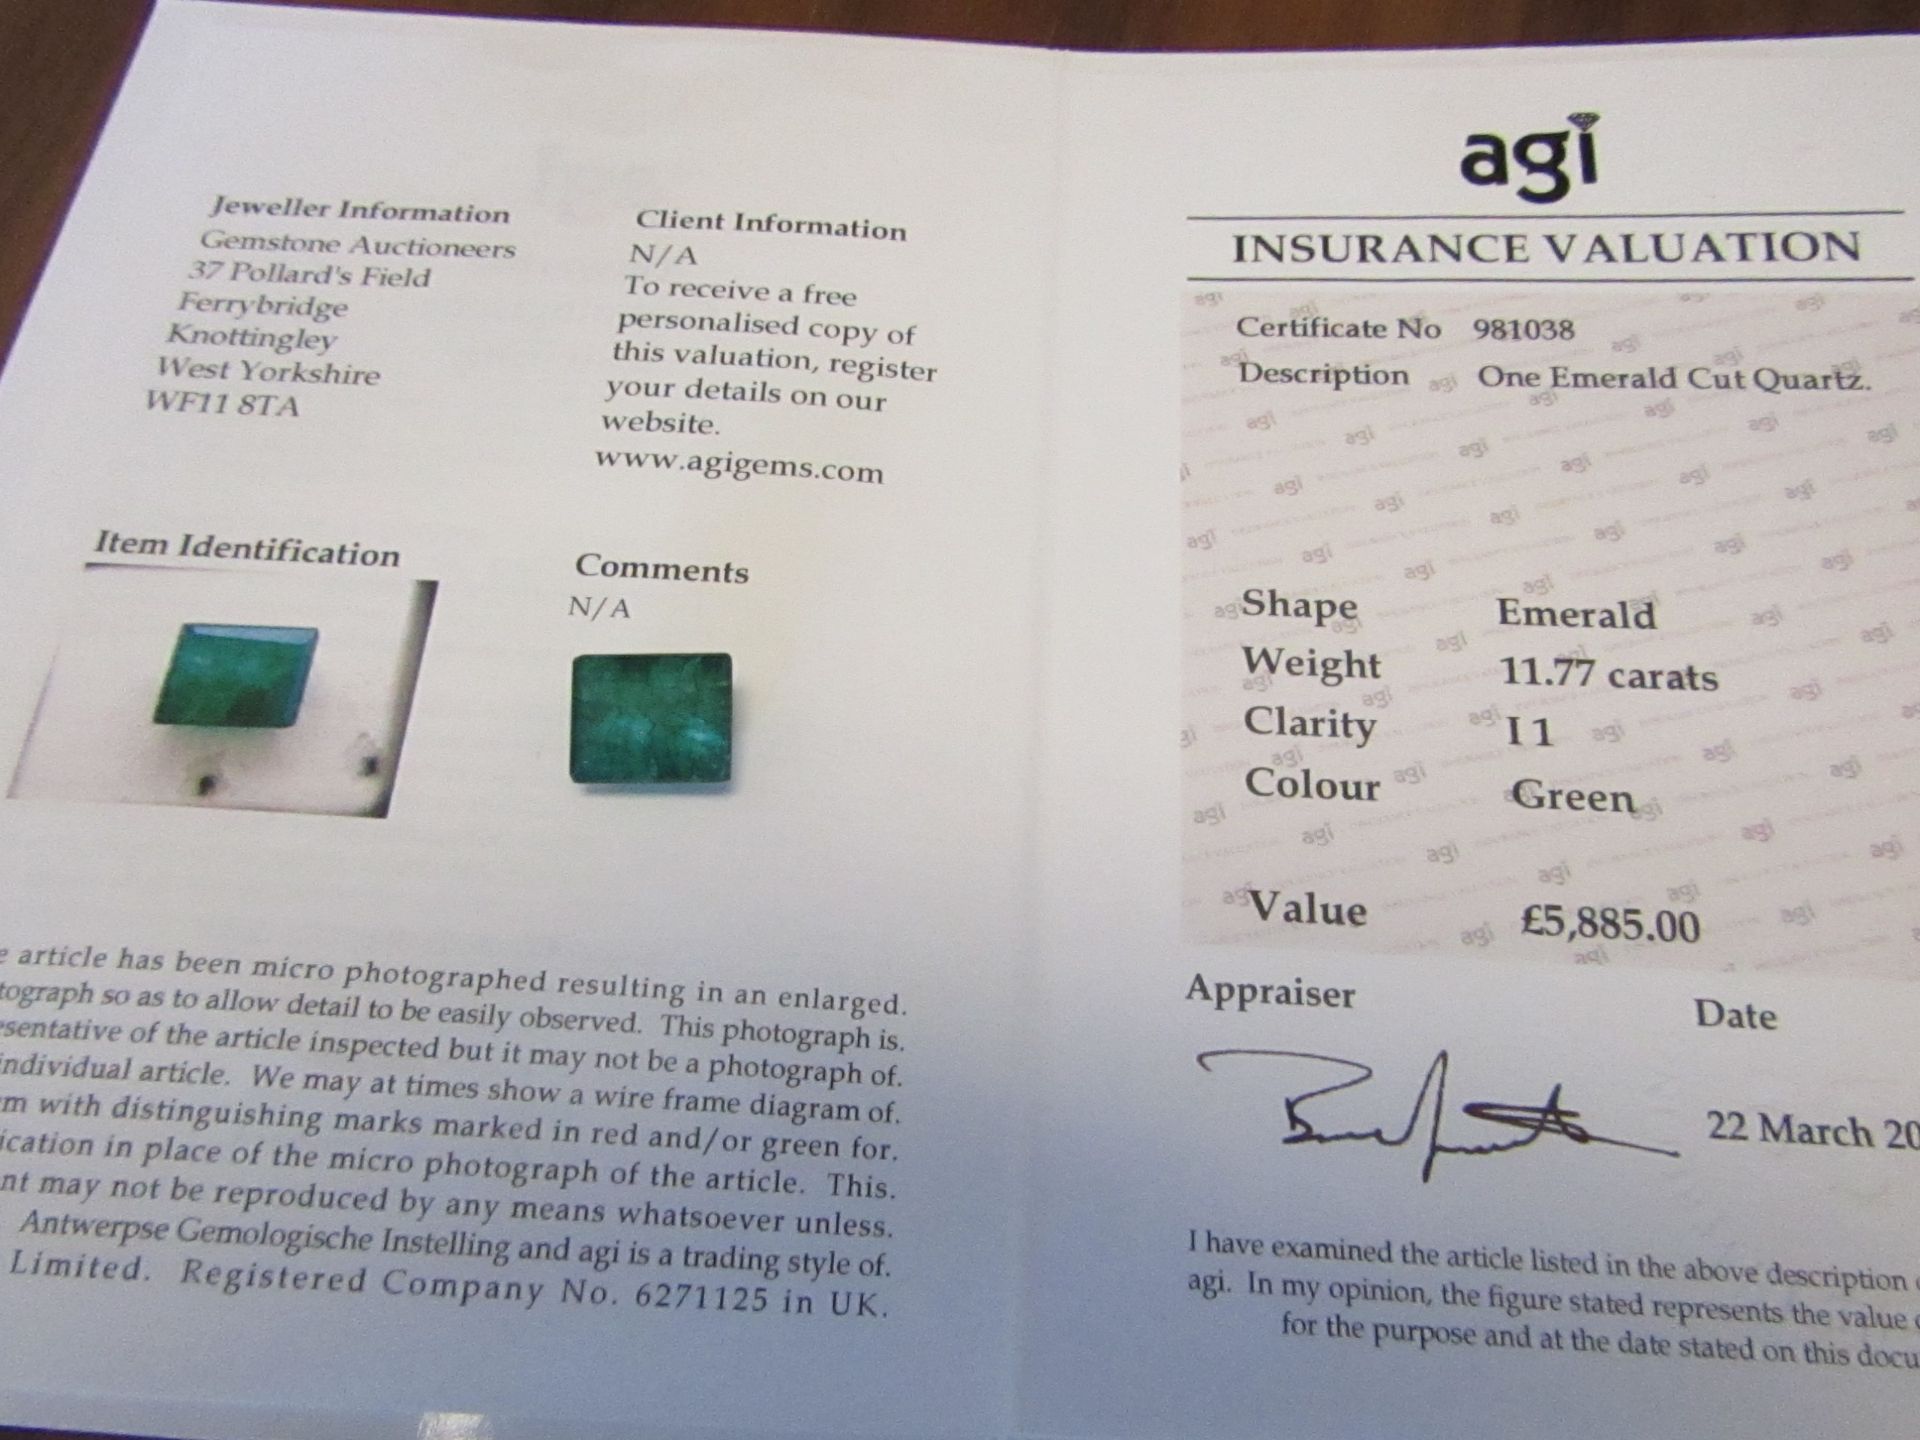 One Emerald Cut Quartz. Weight 11.77 Carats. Clarity I1. Value £5,885.00 as per agi insurance